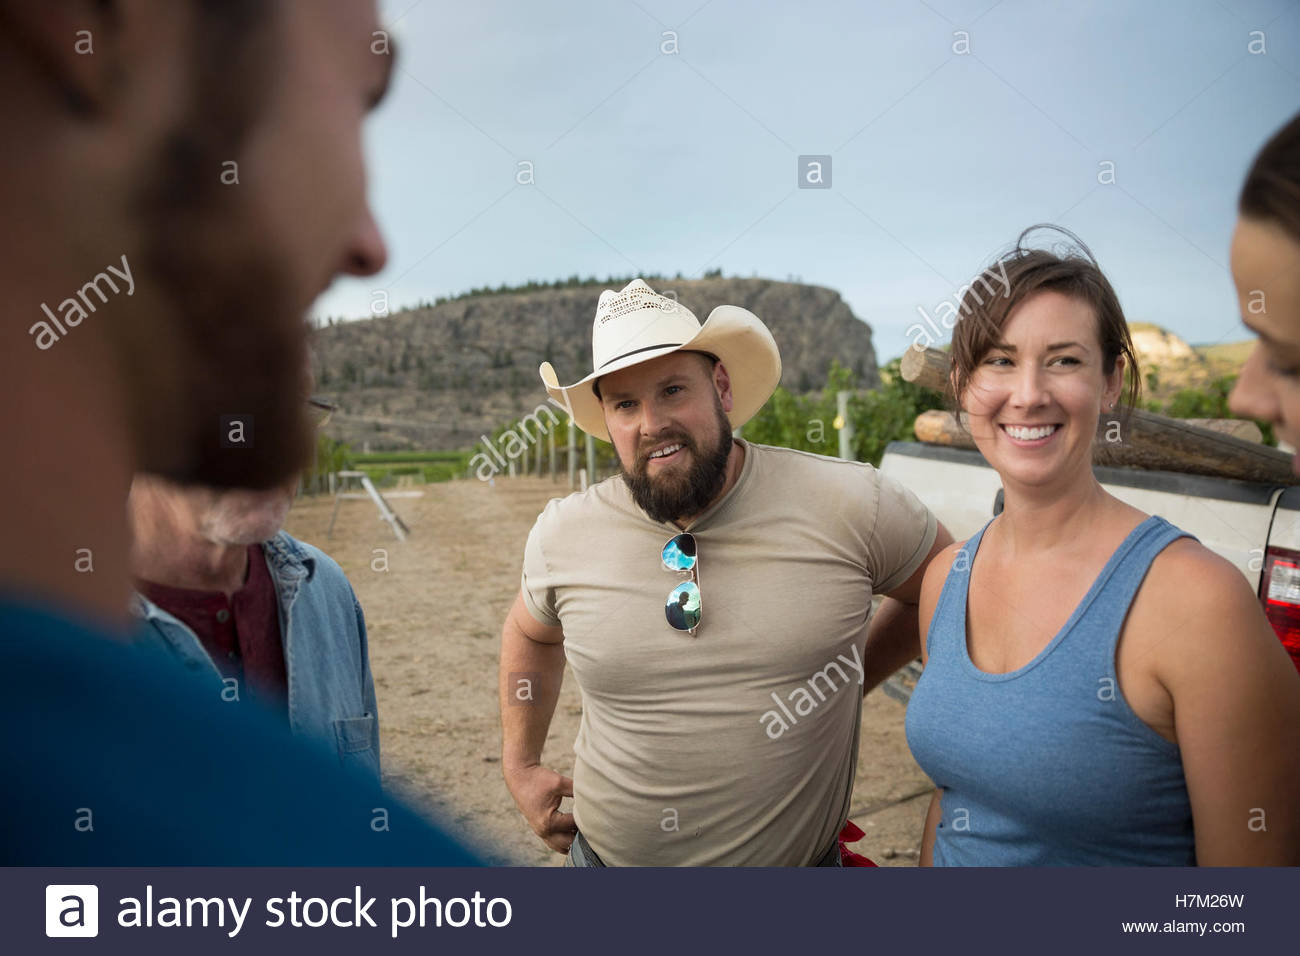 Los trabajadores sonriente hablando en viña Foto de stock